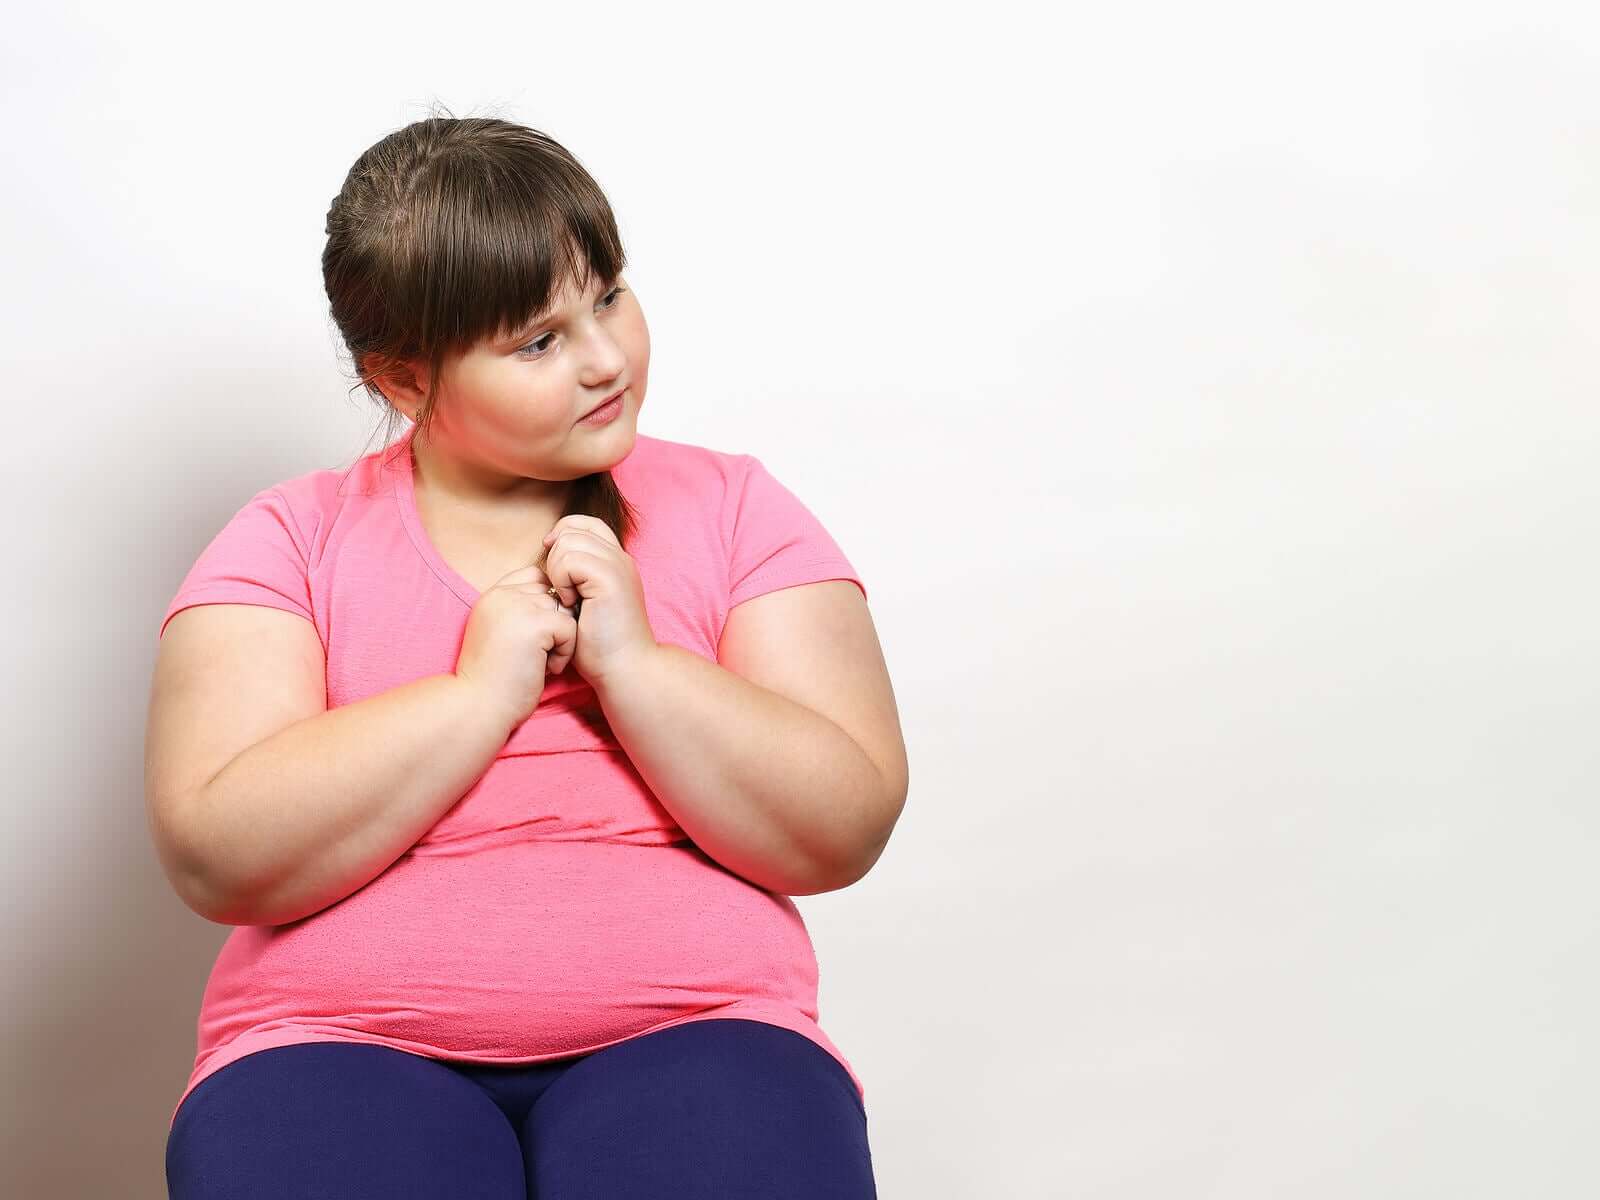 Weight Loss Goals for Overweight Children